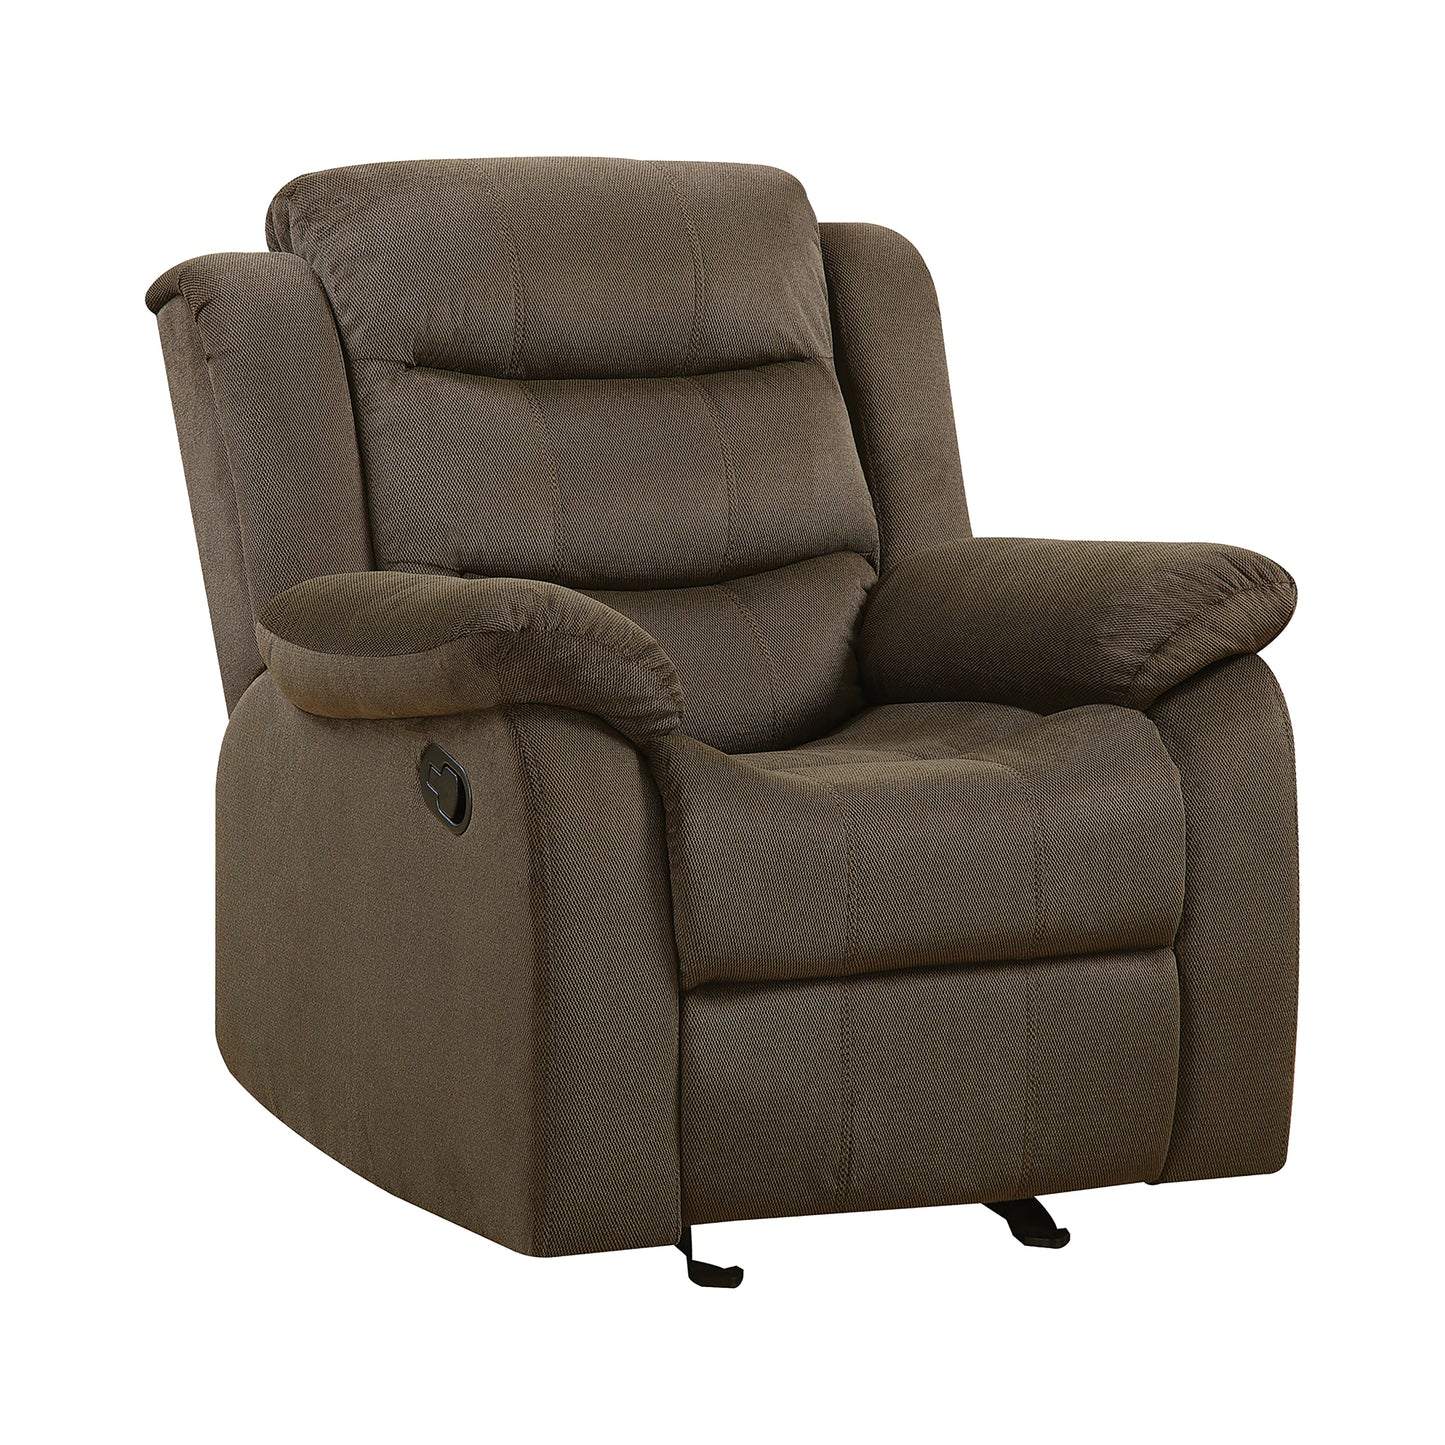 Rodman Upholstered Tufted Living Room Set Olive Brown - 601881